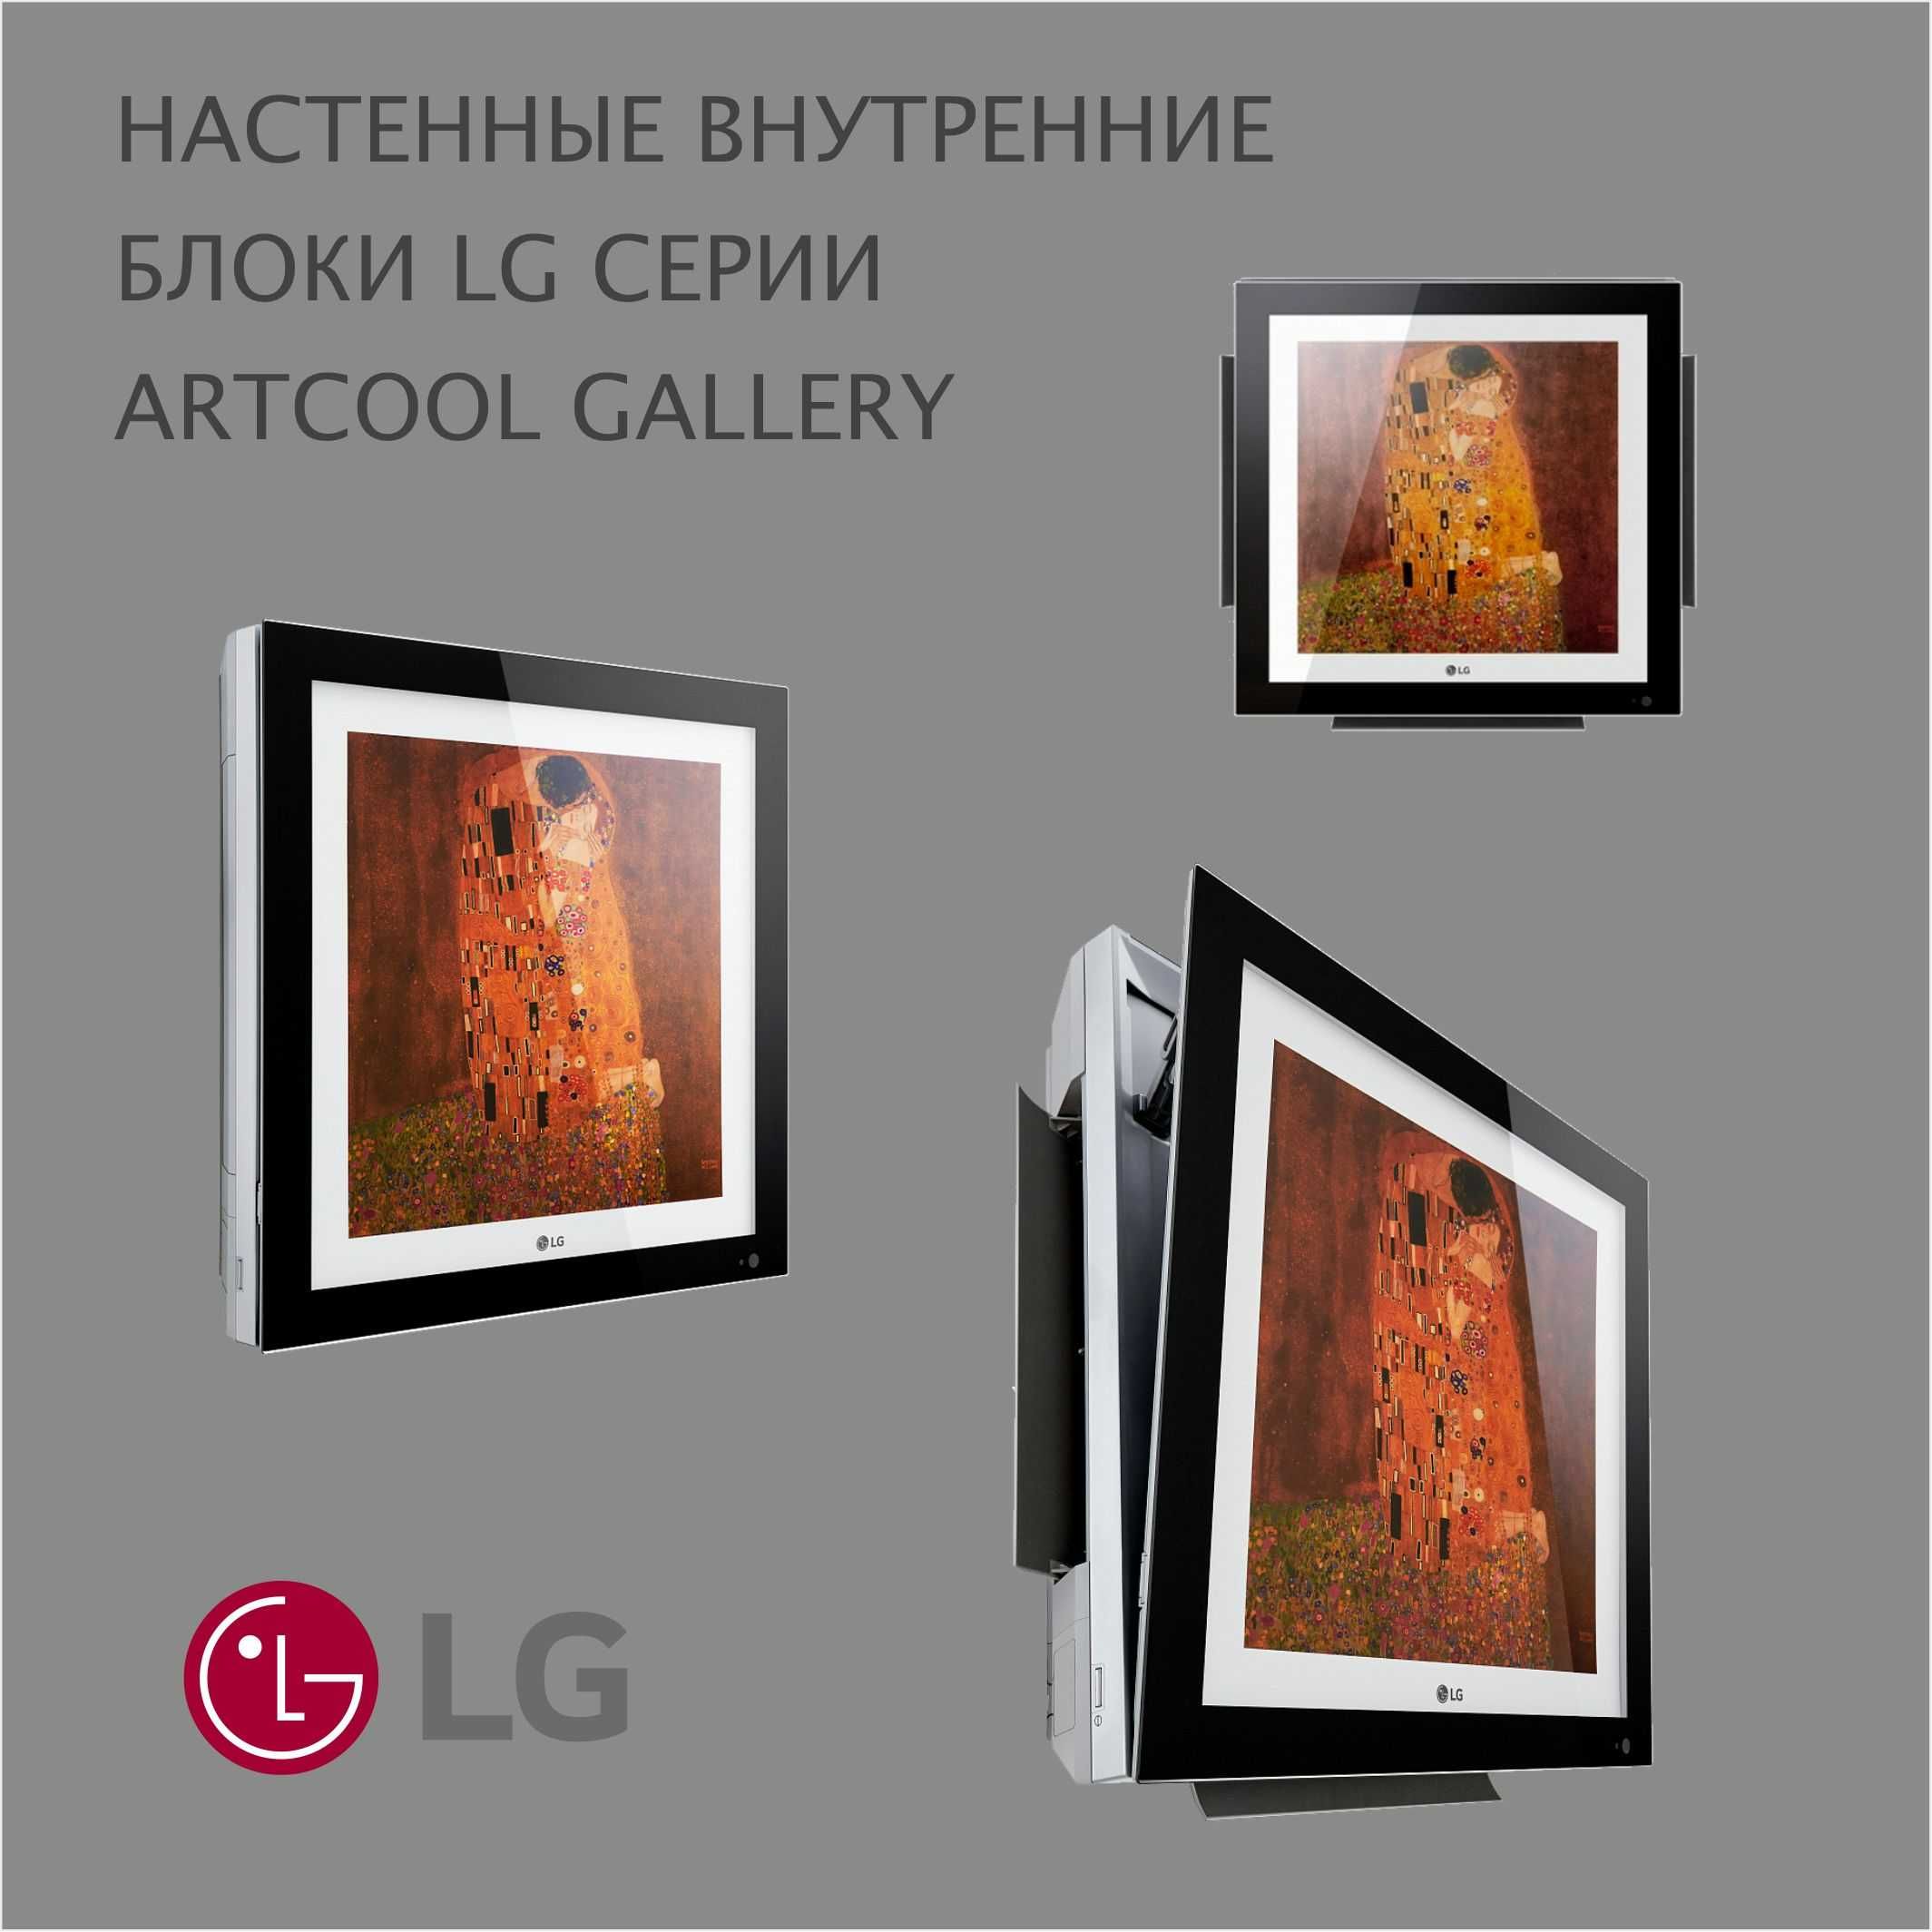 Внутренний блок Artcool Gallery 07 VRF-СИСТЕМЫ LG